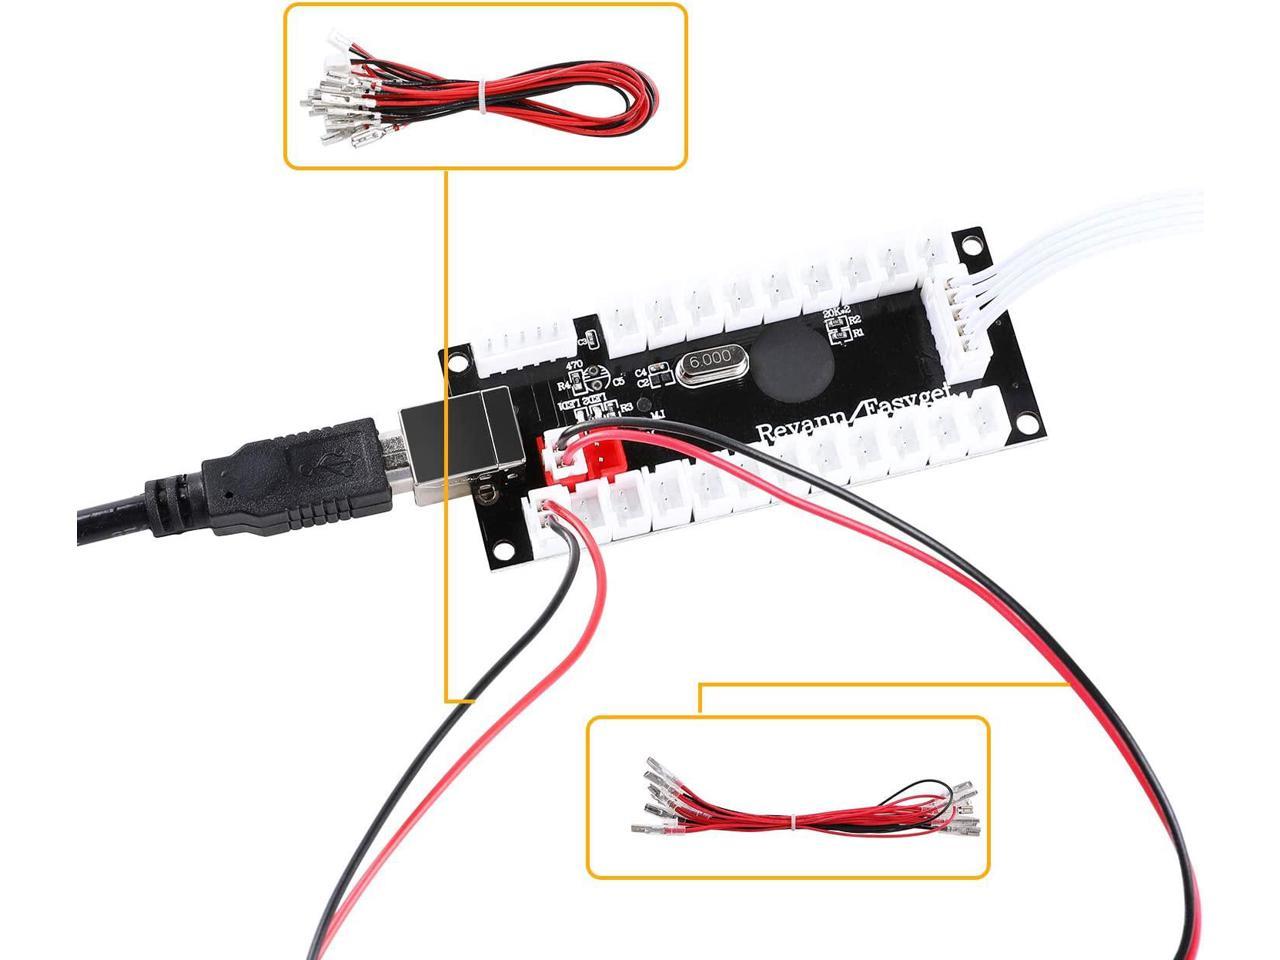 8 Way Stick Kit Hikig Arcade LED DIY Kit Zero Delay USB Encoder,10x LED Buttons 